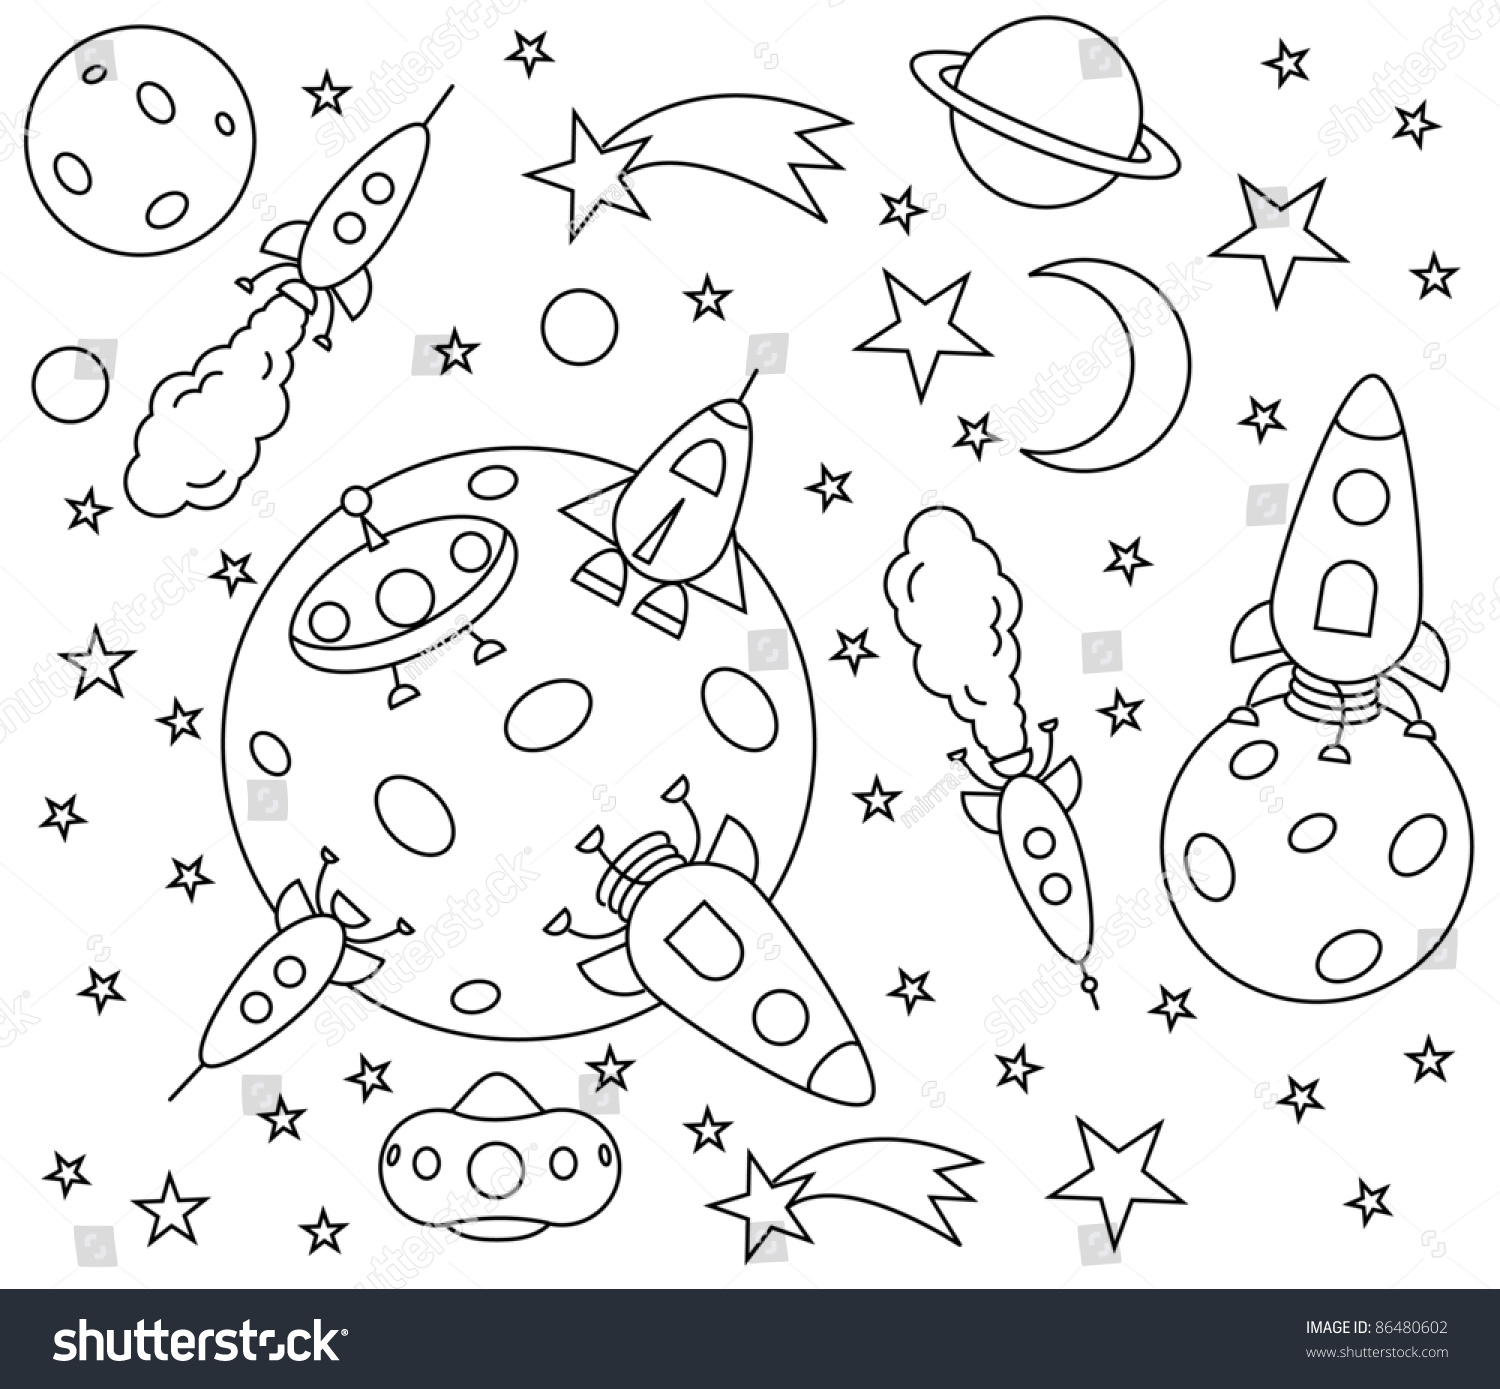 Задания ко дню космонавтики. Космос раскраска для детей. Раскраска. В космосе. Раскраска для малышей. Космос. Космические раскраски для детей.